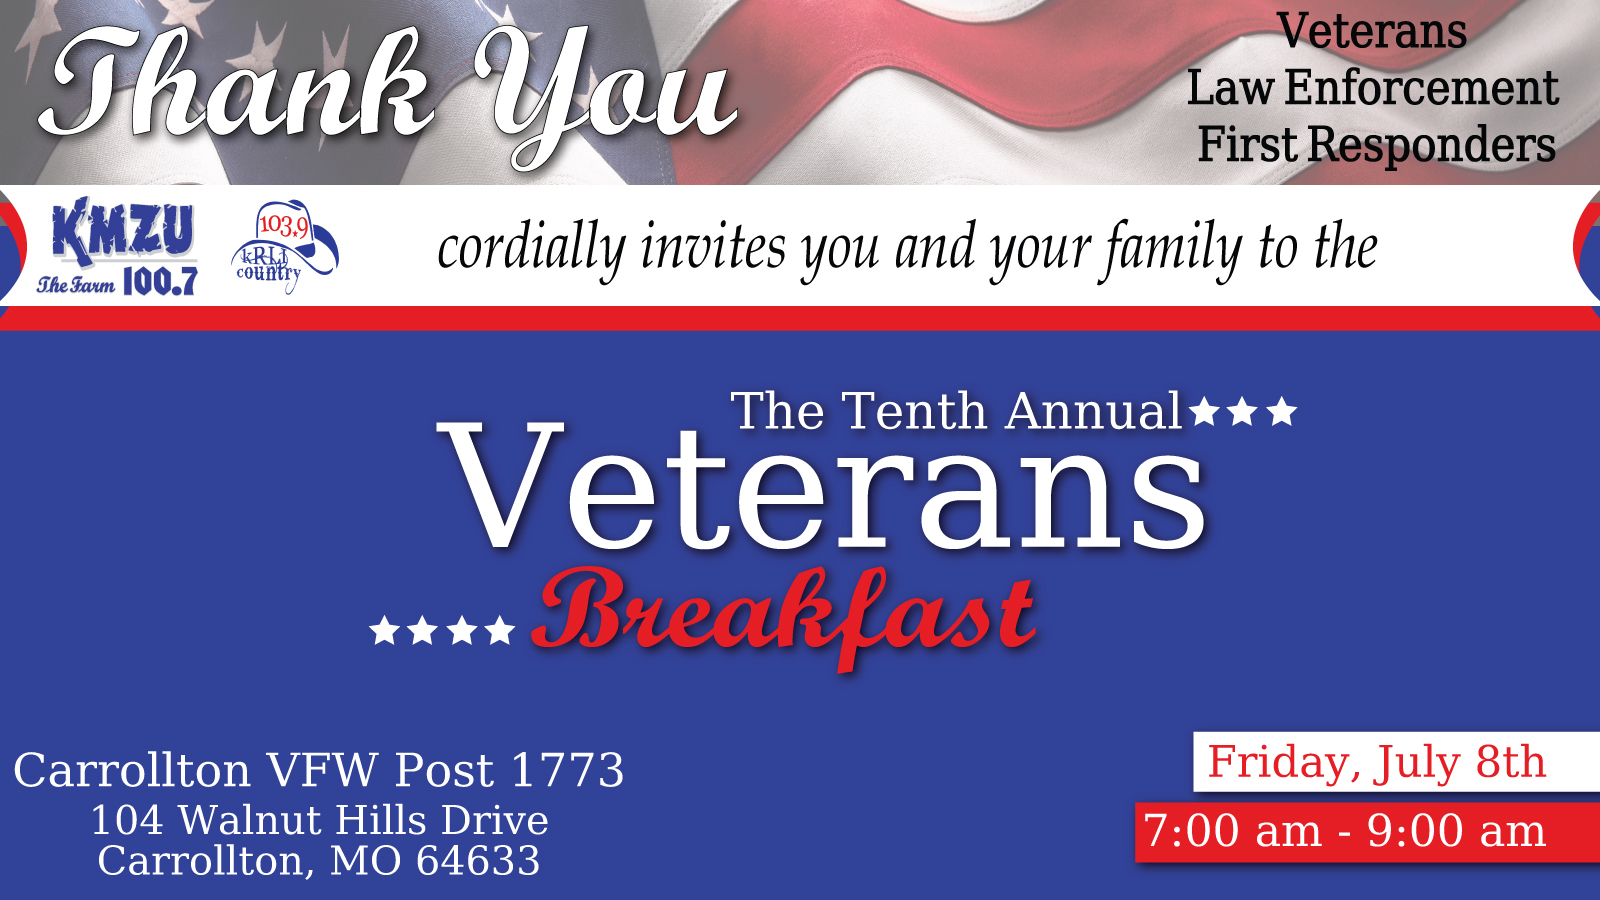 *Veterans Breakfast-KMZU/KRLI, Carrollton, Missouri, United States